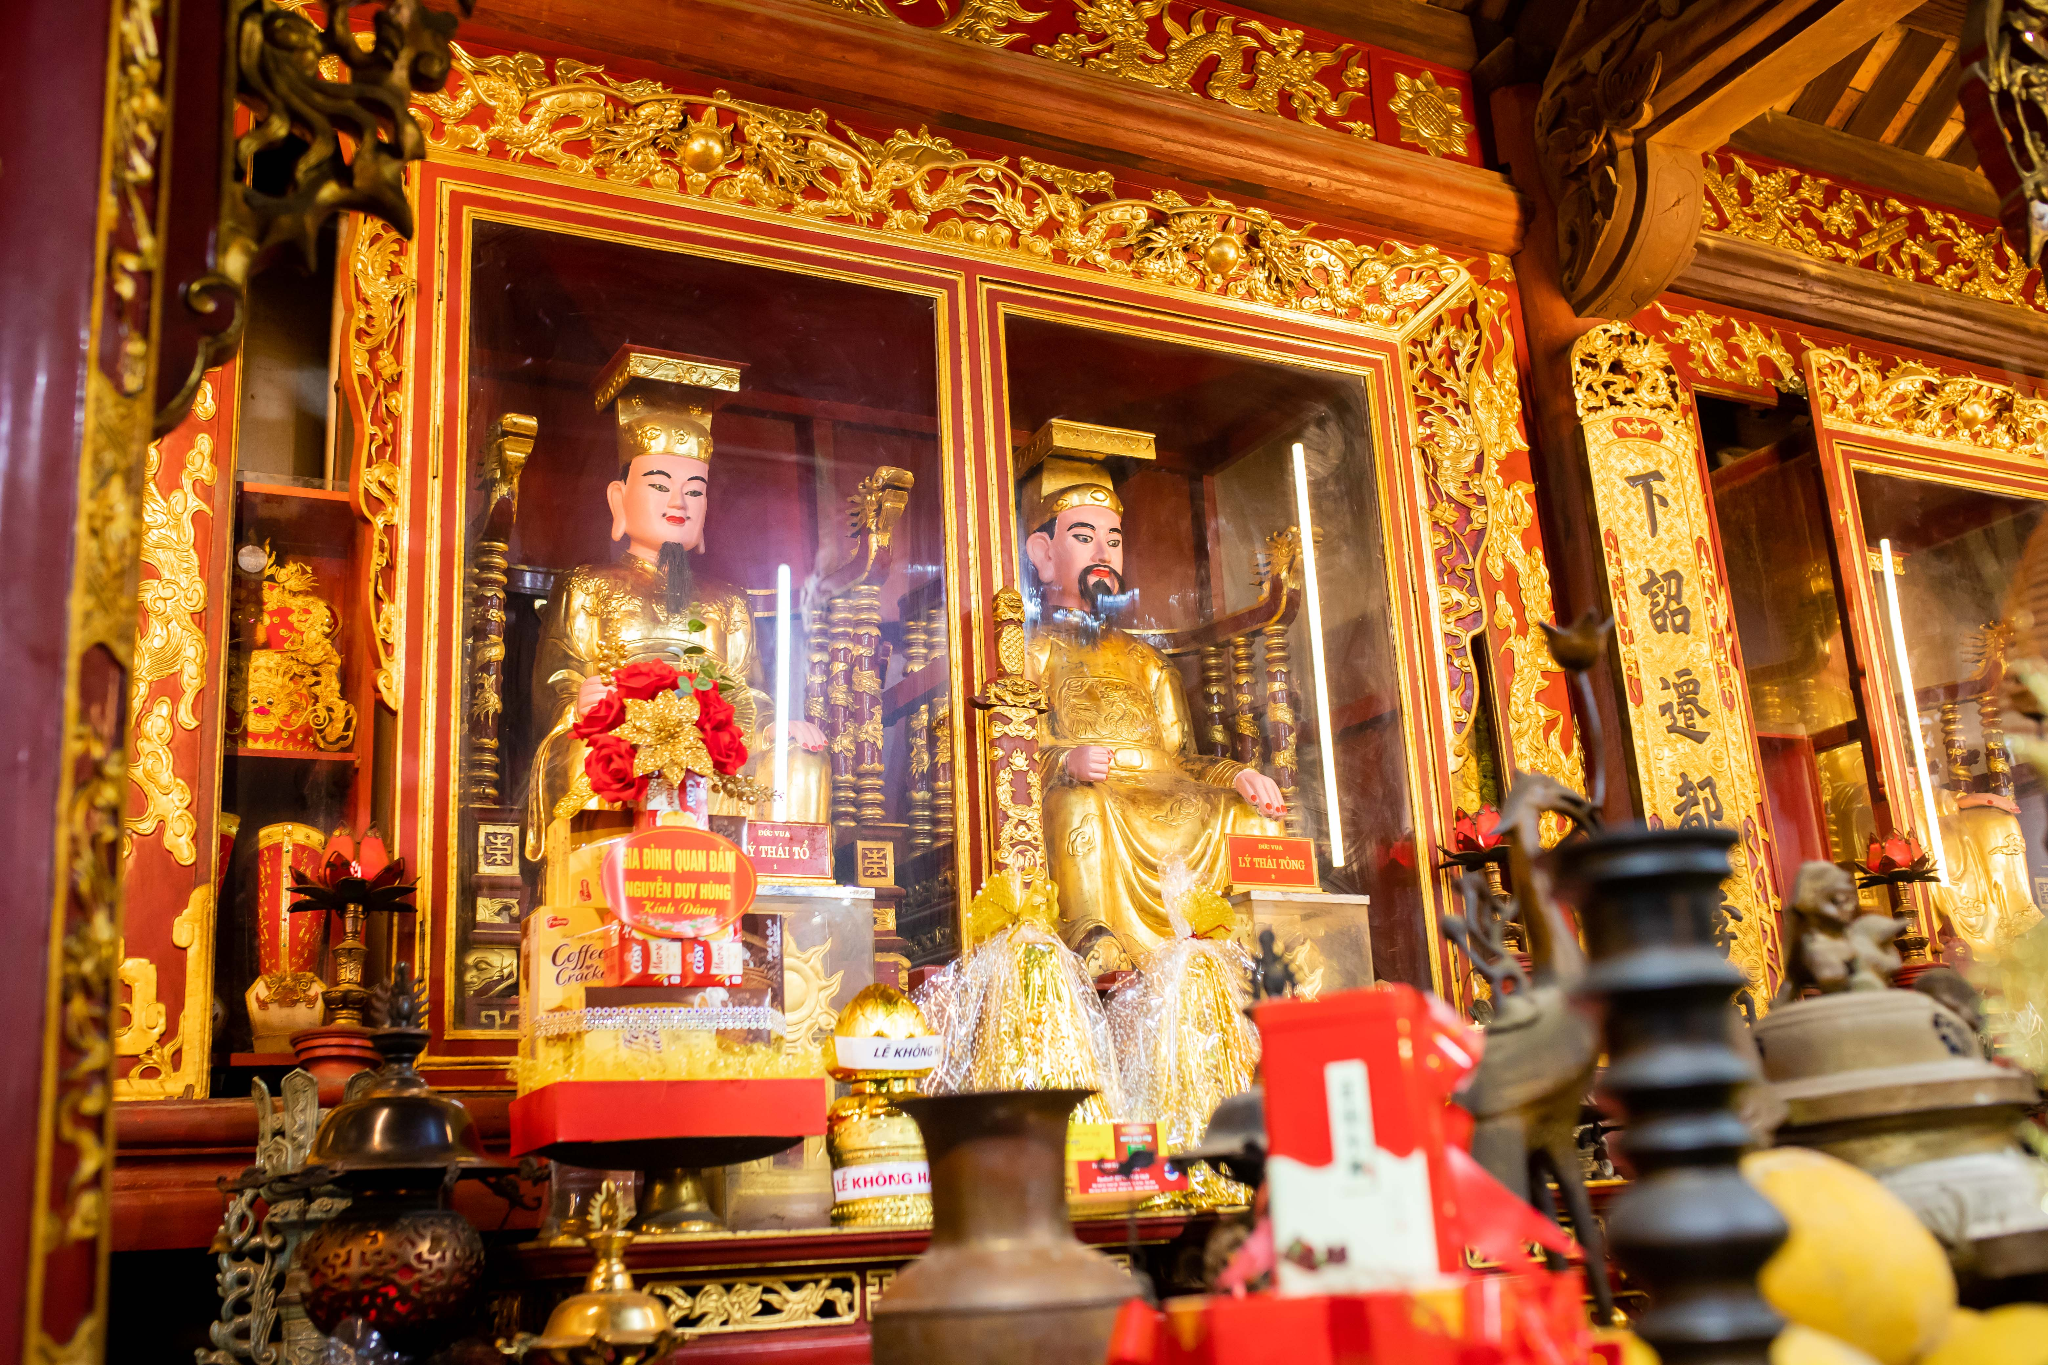 Địa điểm du lịch Bắc Ninh đậm chất văn hóa lịch sử